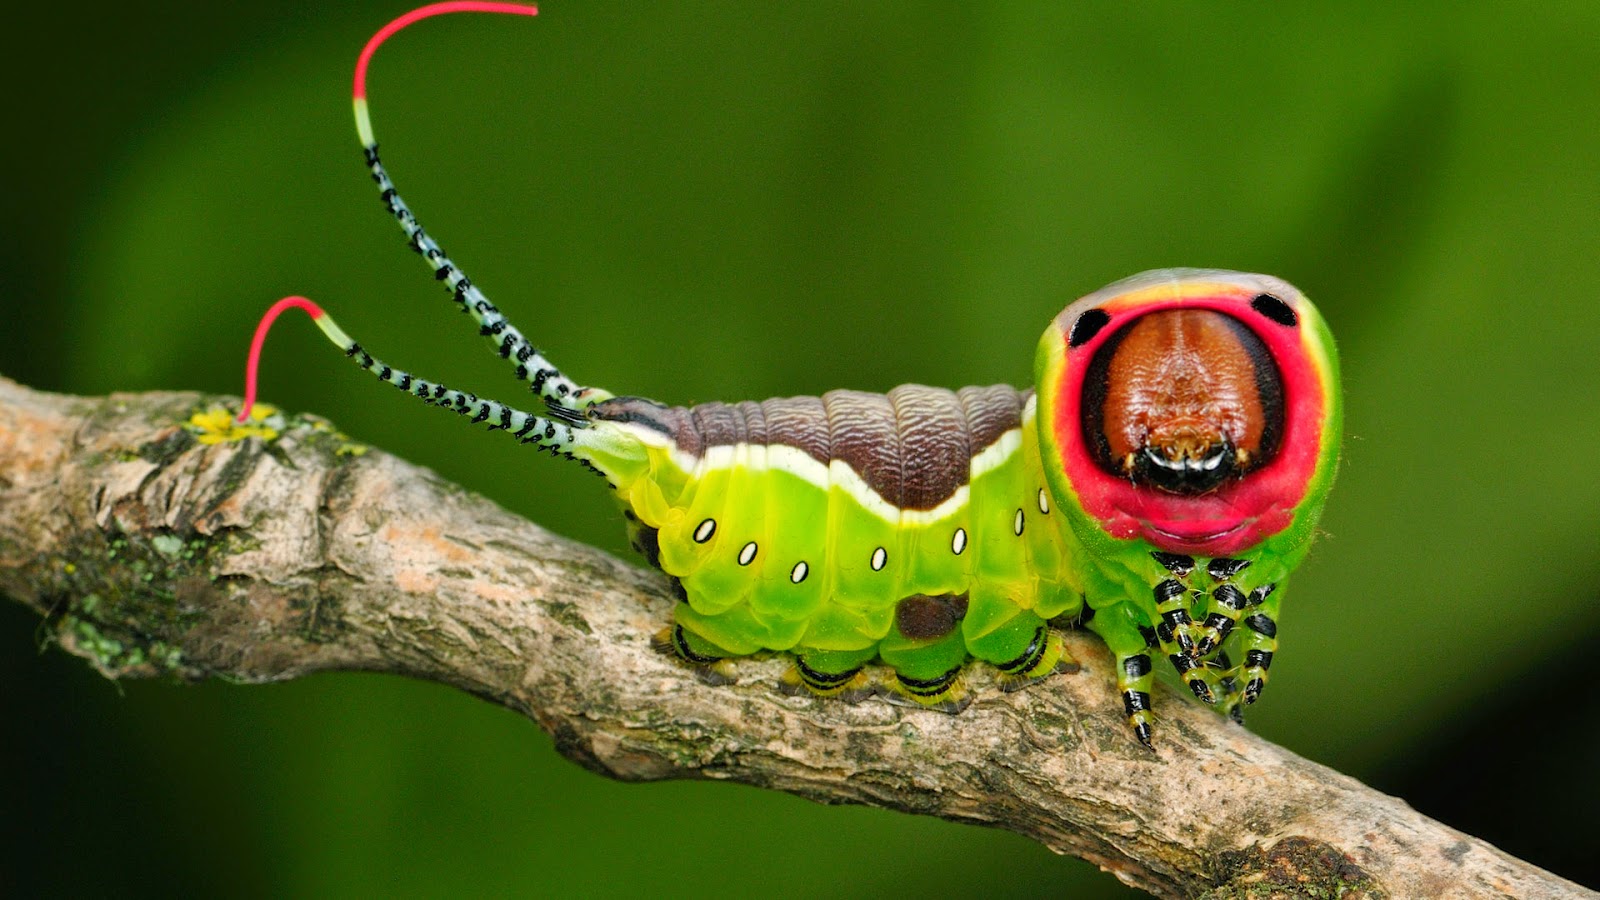 Beetle Boy S Bio Top Strangest Caterpillars